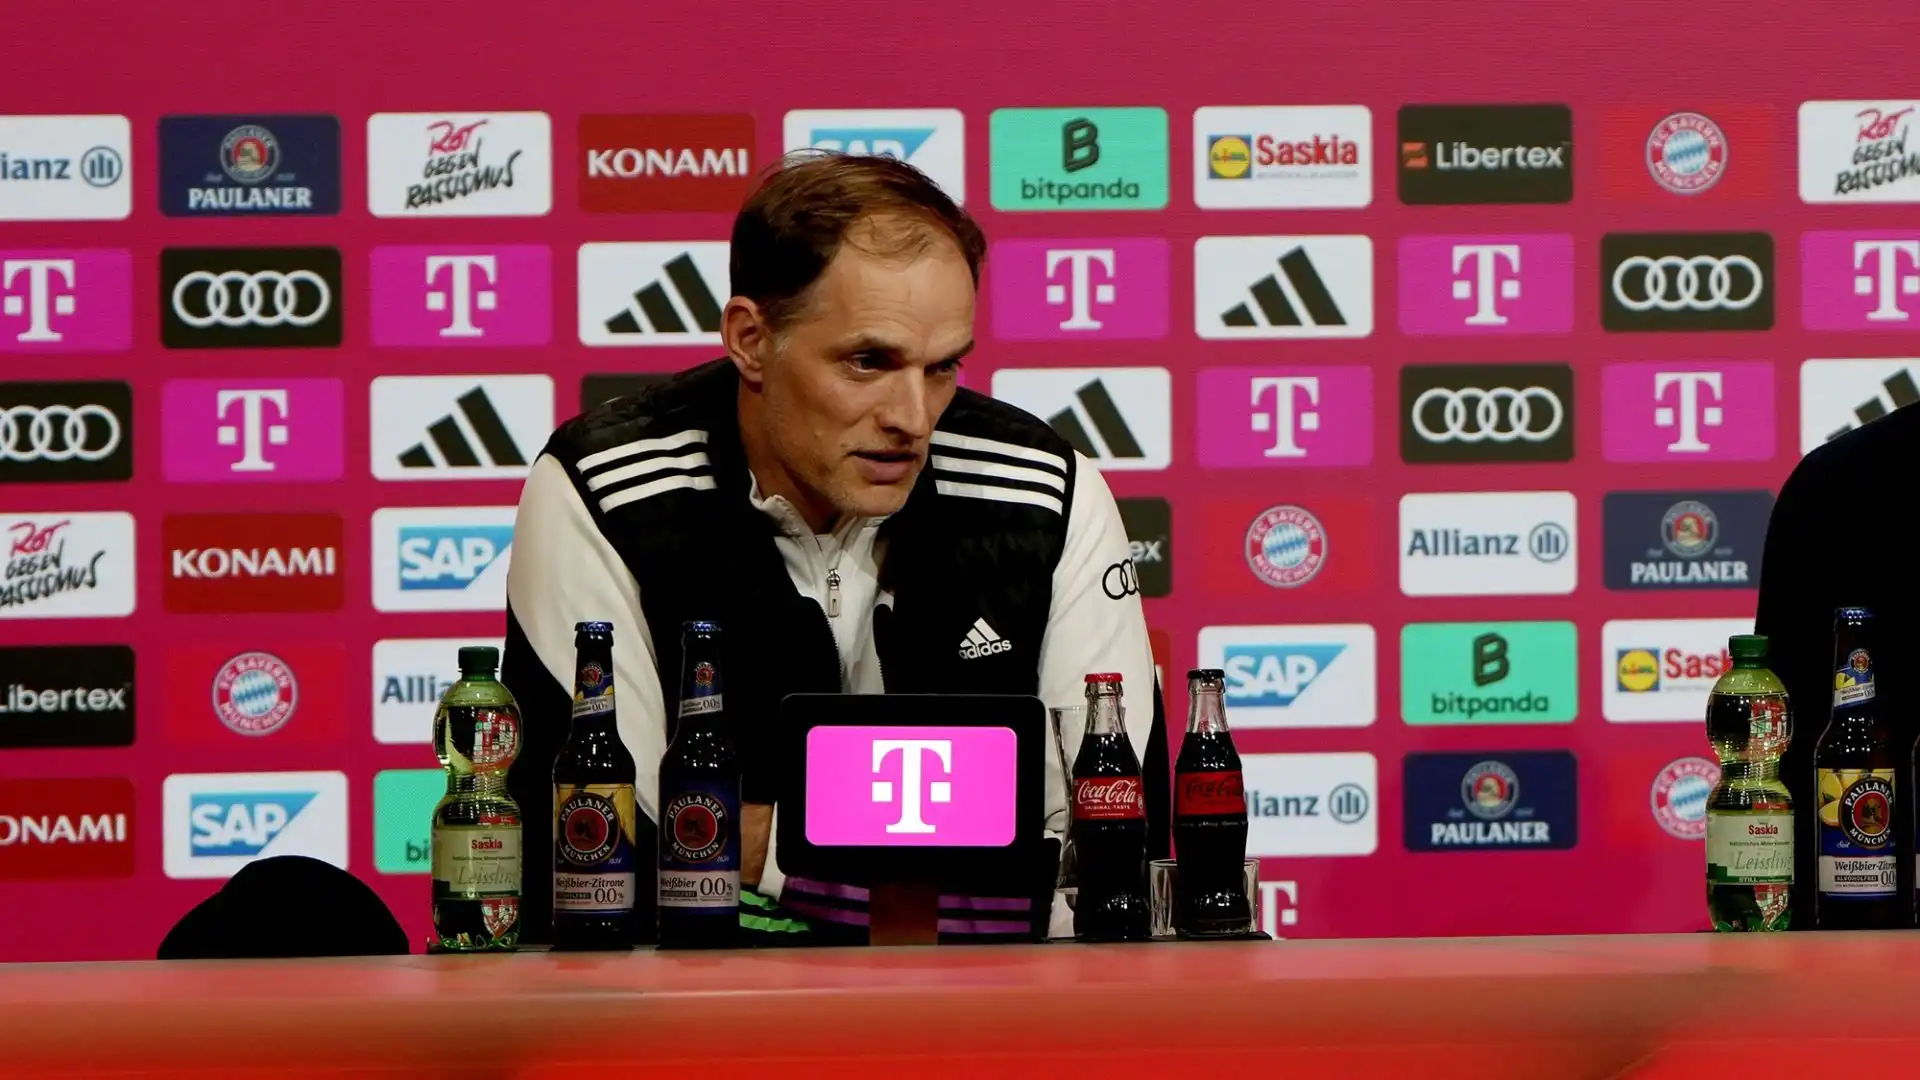 La ricerca dell'allenatore, che tormenta il Bayern dall'annuncio dell'addio di Tuchel, sembra essere finalmente terminata